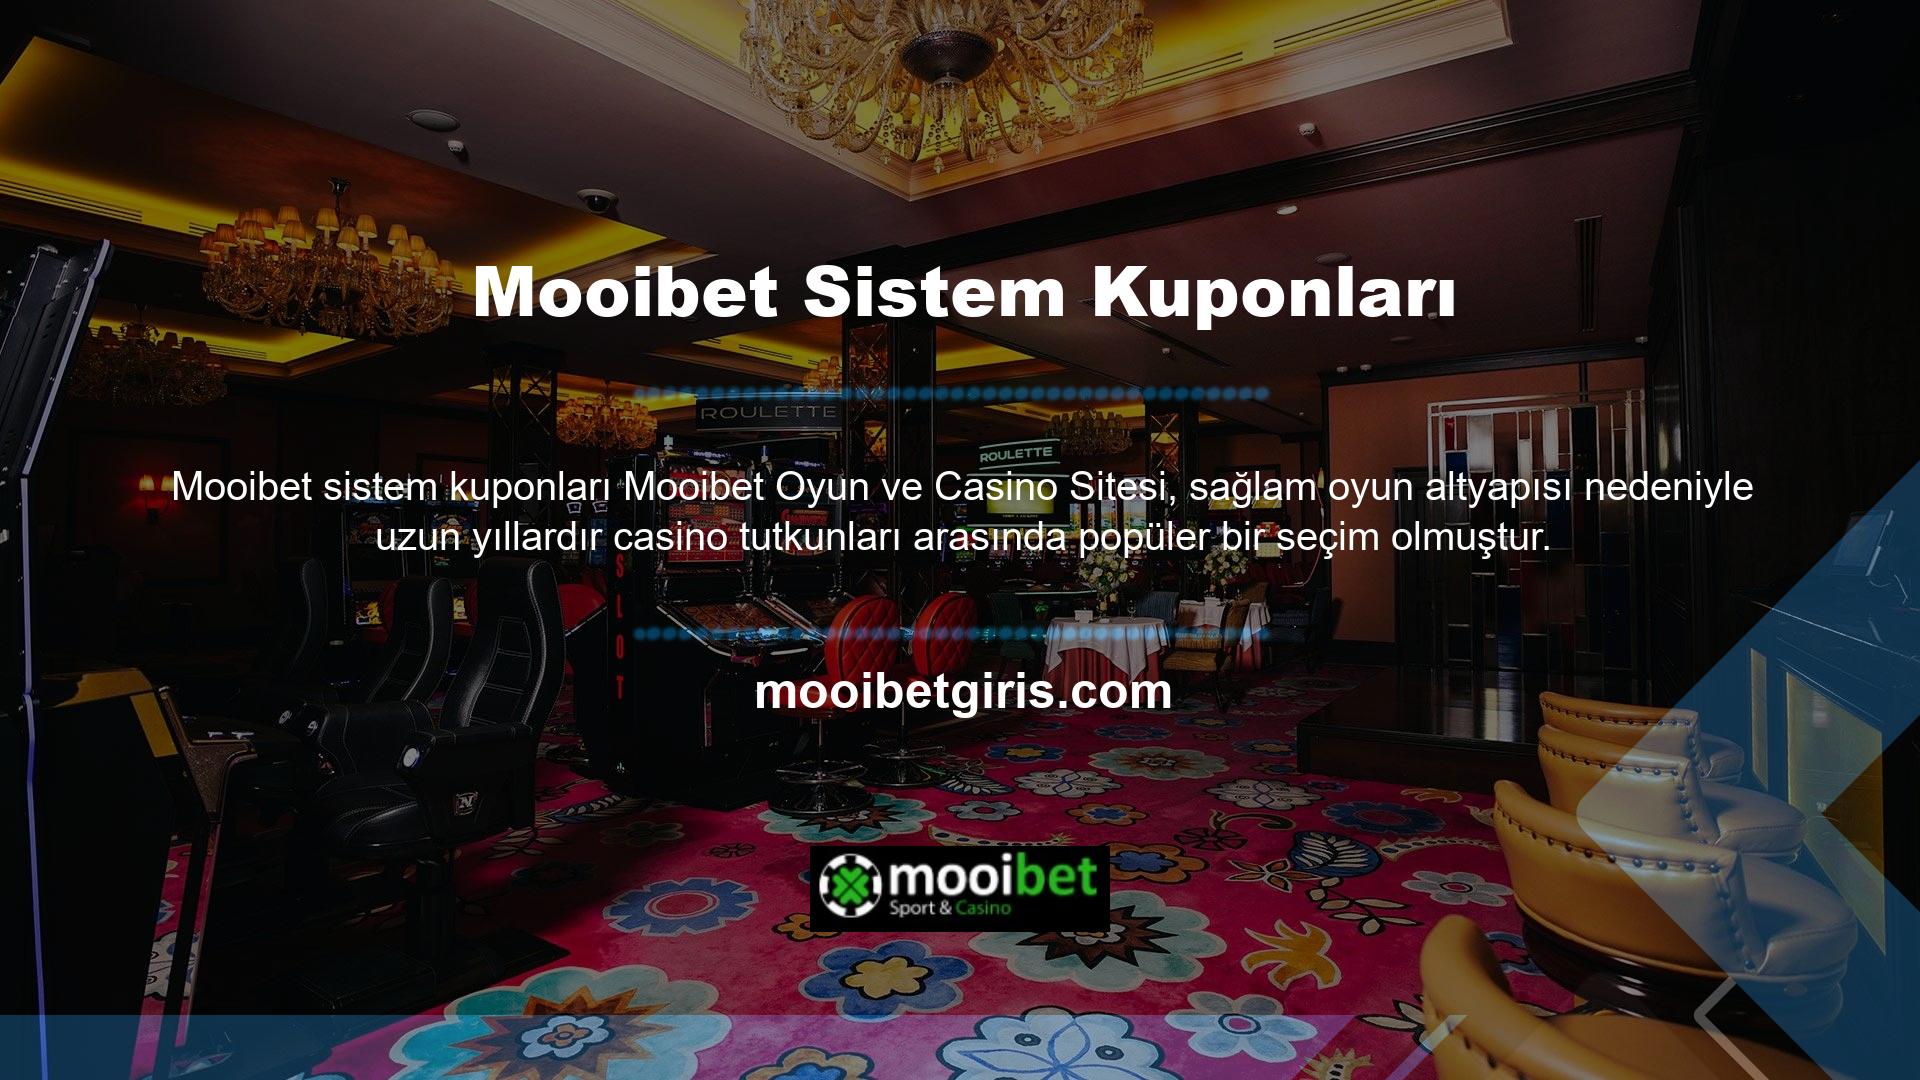 Mooibet web sitesinde pek çok eğlenceli bahis oyunu mevcut